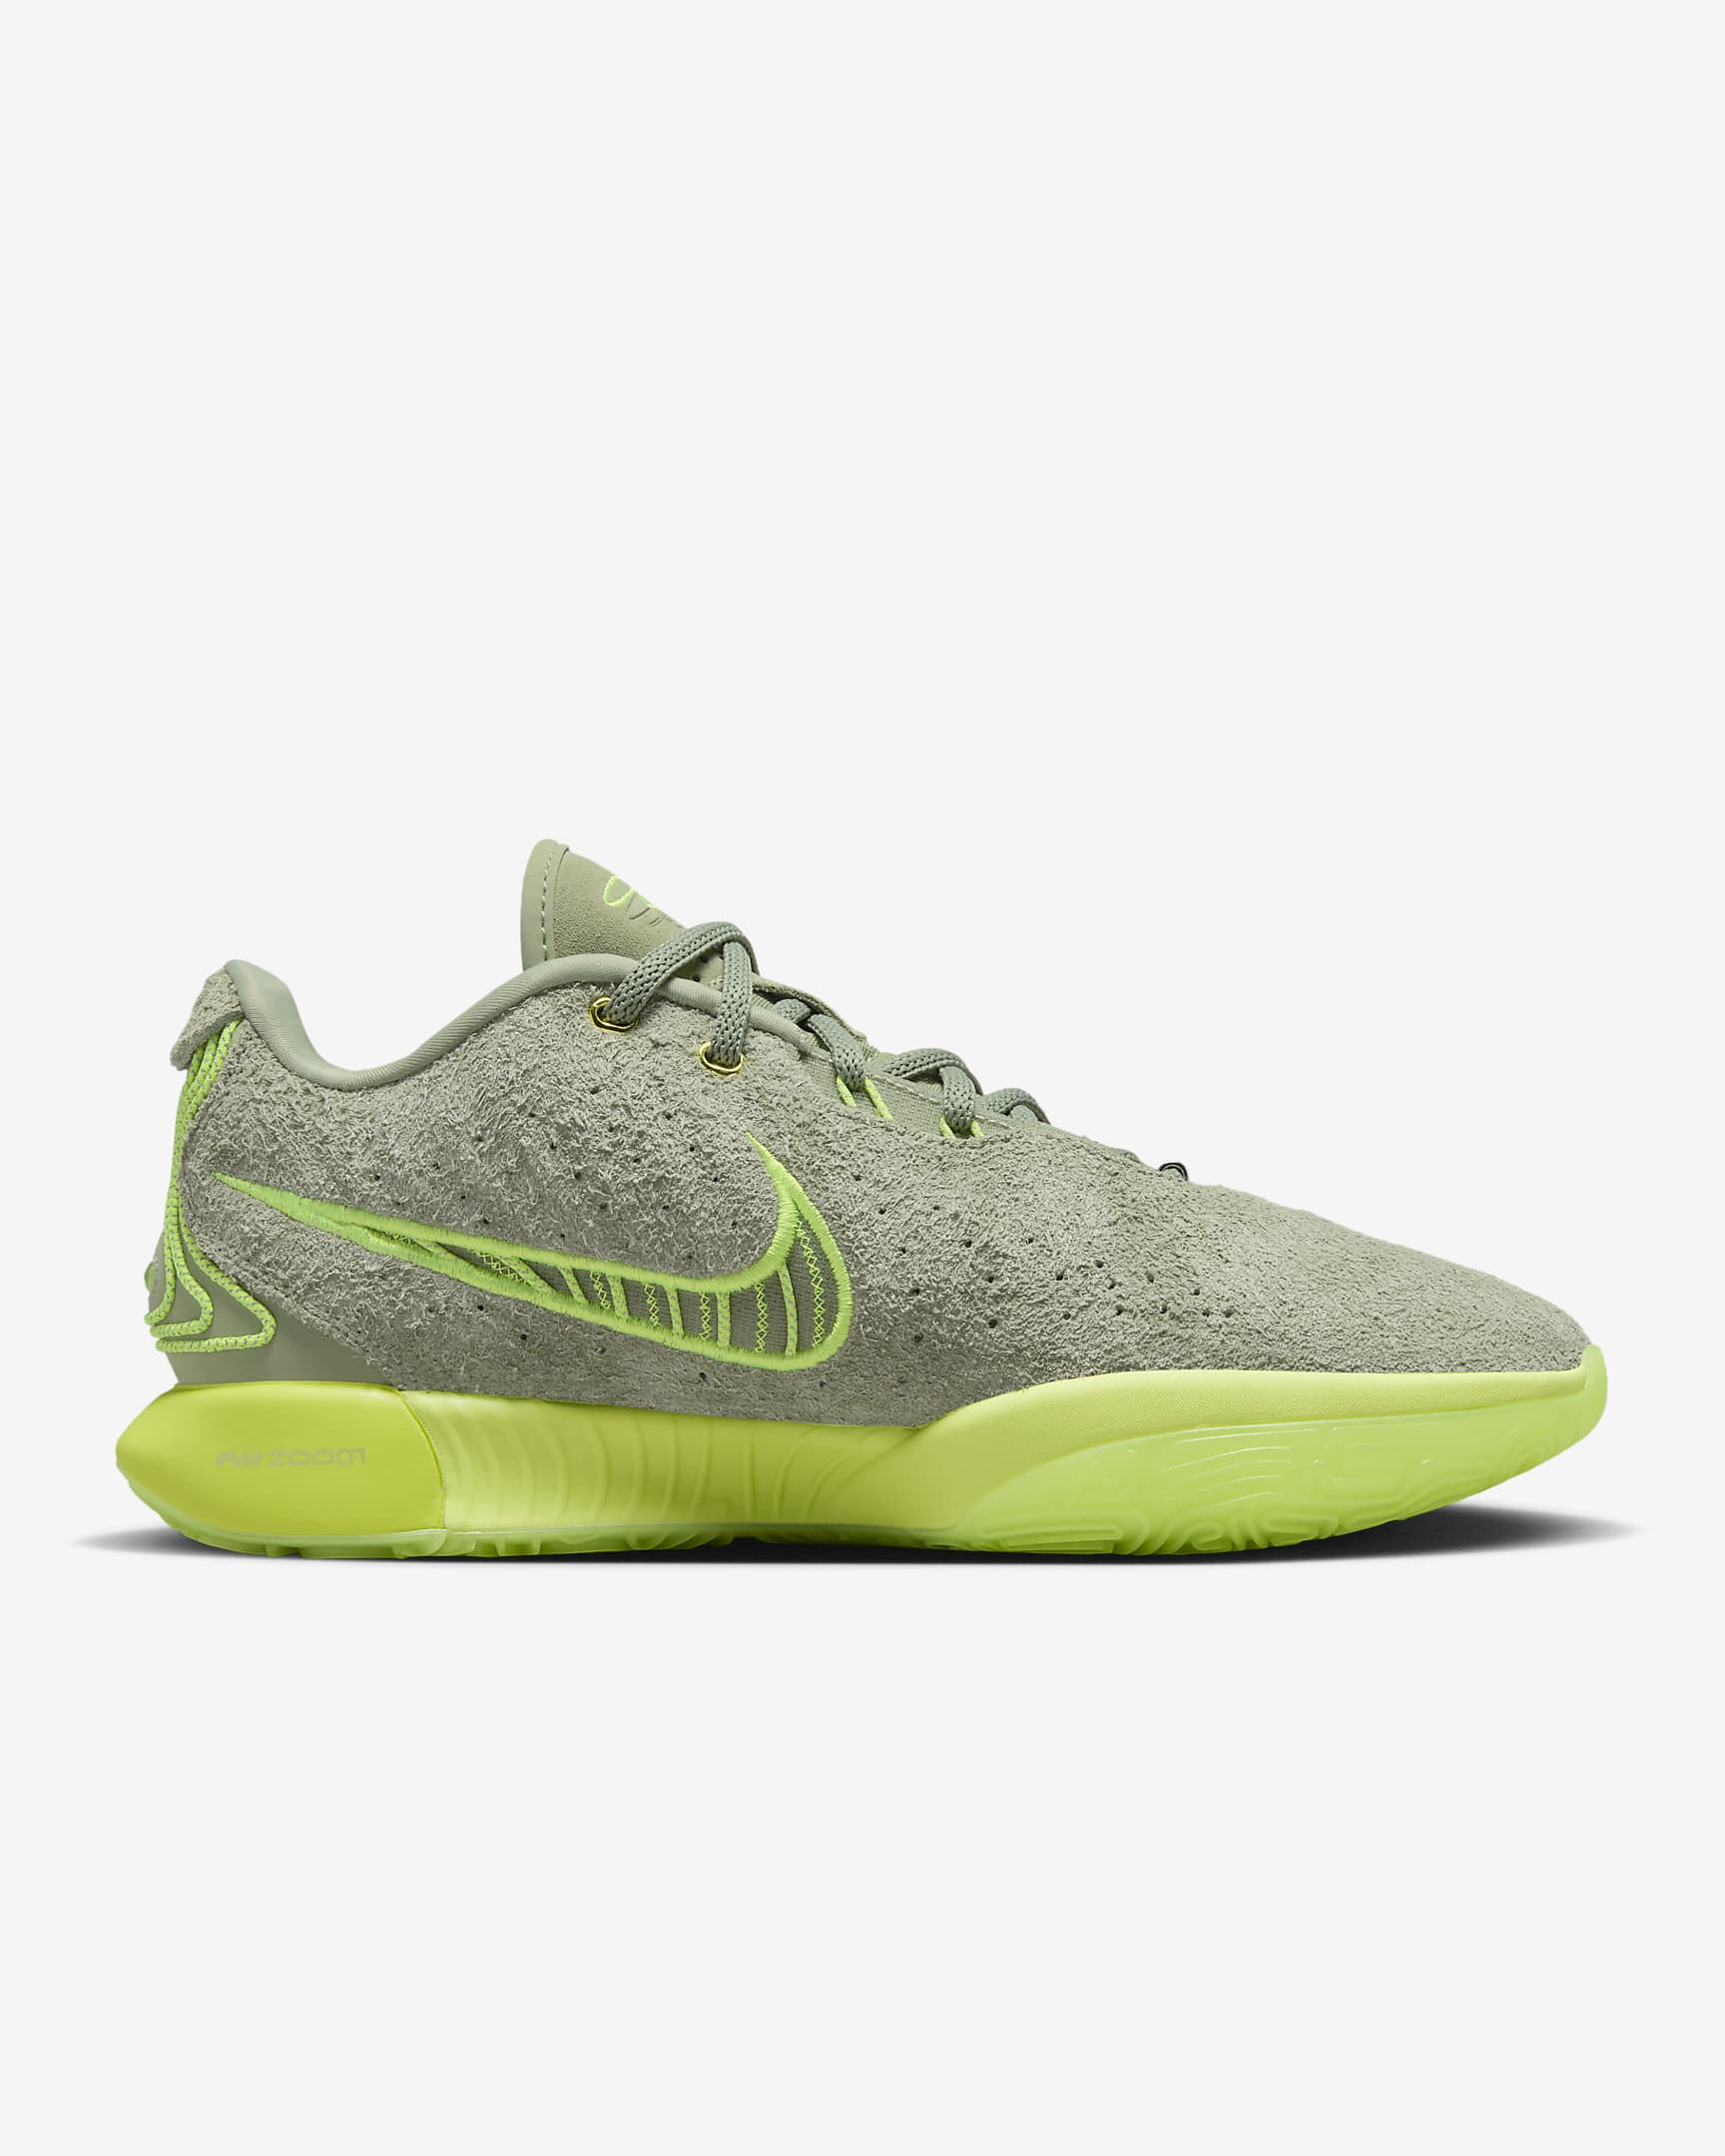 LeBron XXI Basketball Shoes - Oil Green/Volt/Volt